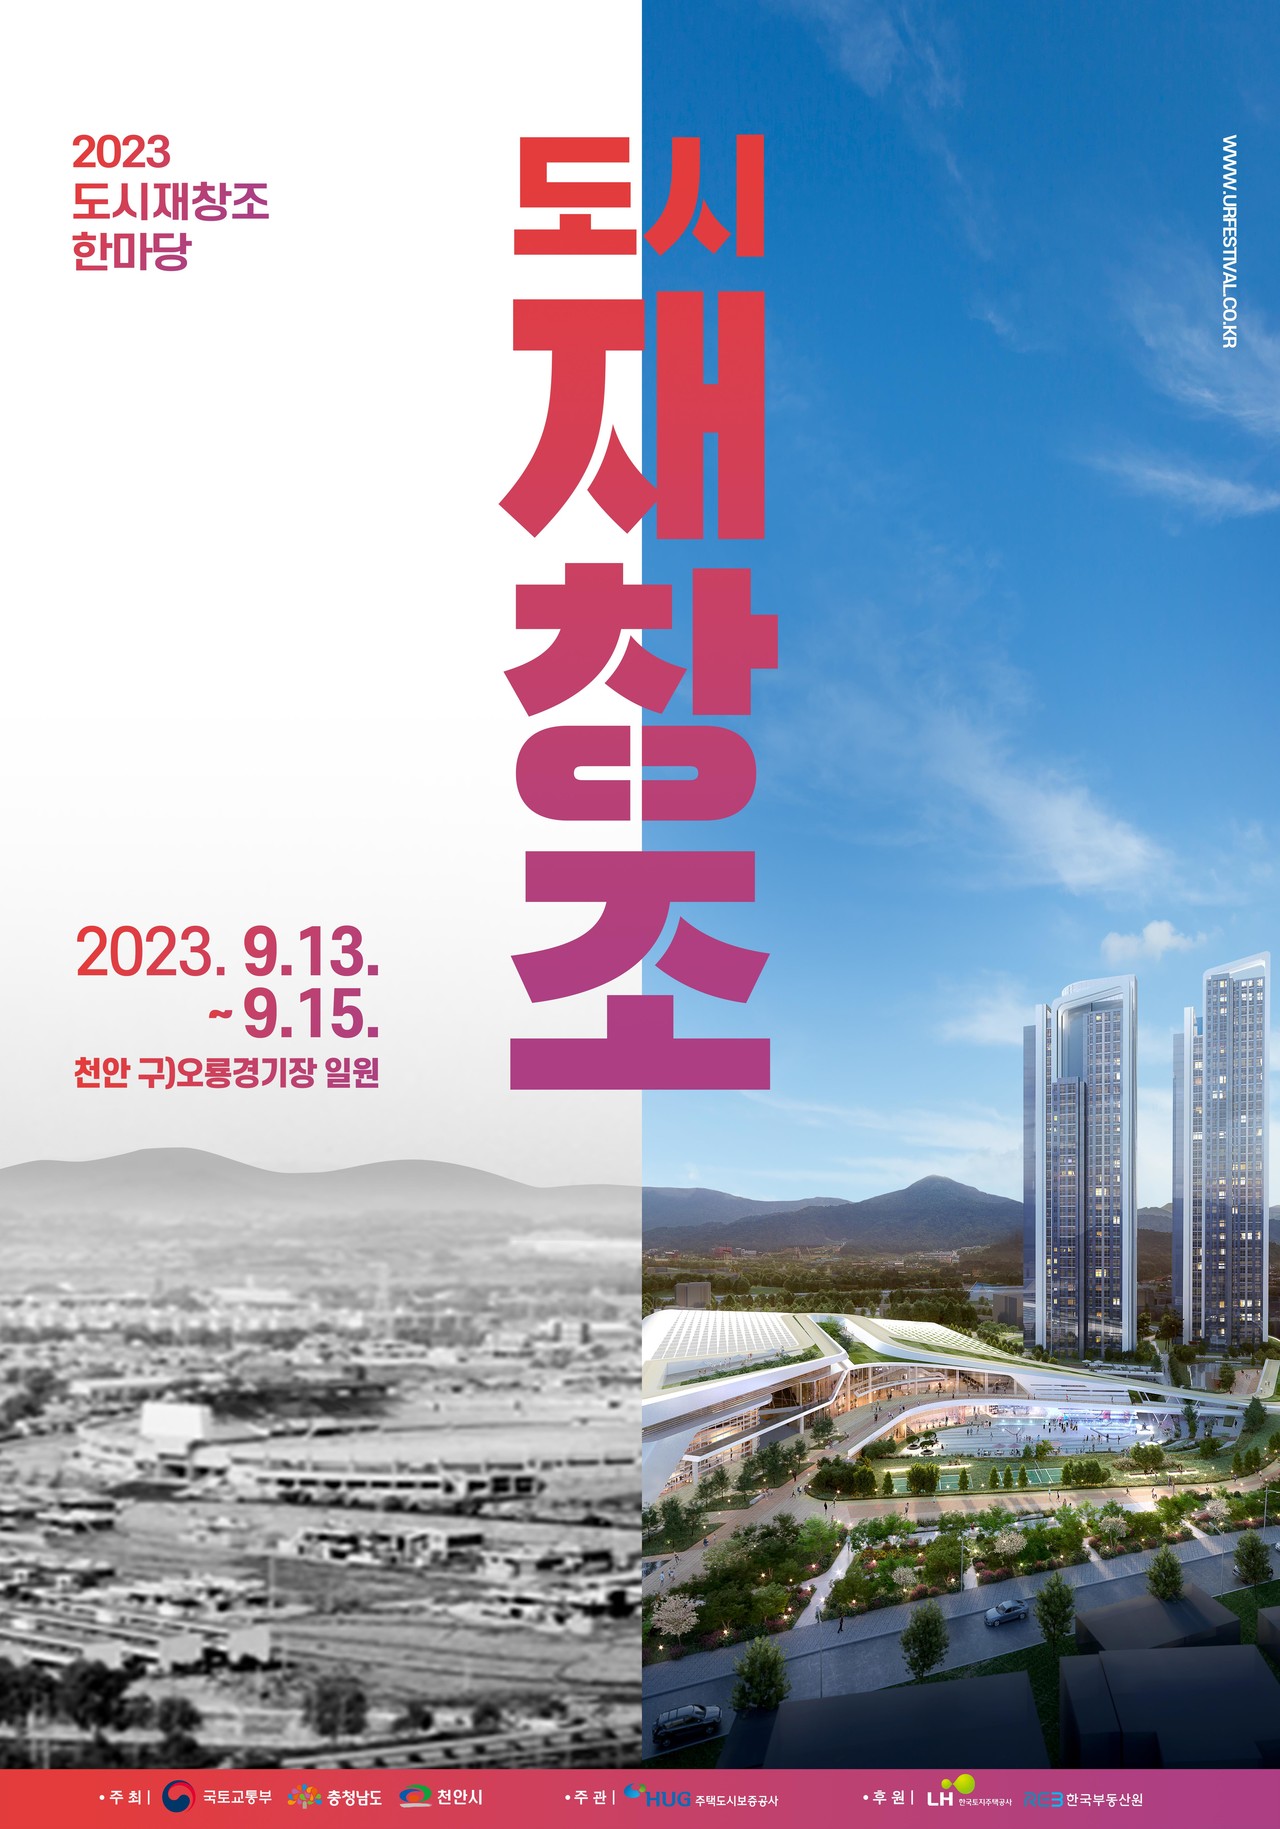 2023 도시재창조 한마당' 포스터(자료 제공=국토부)